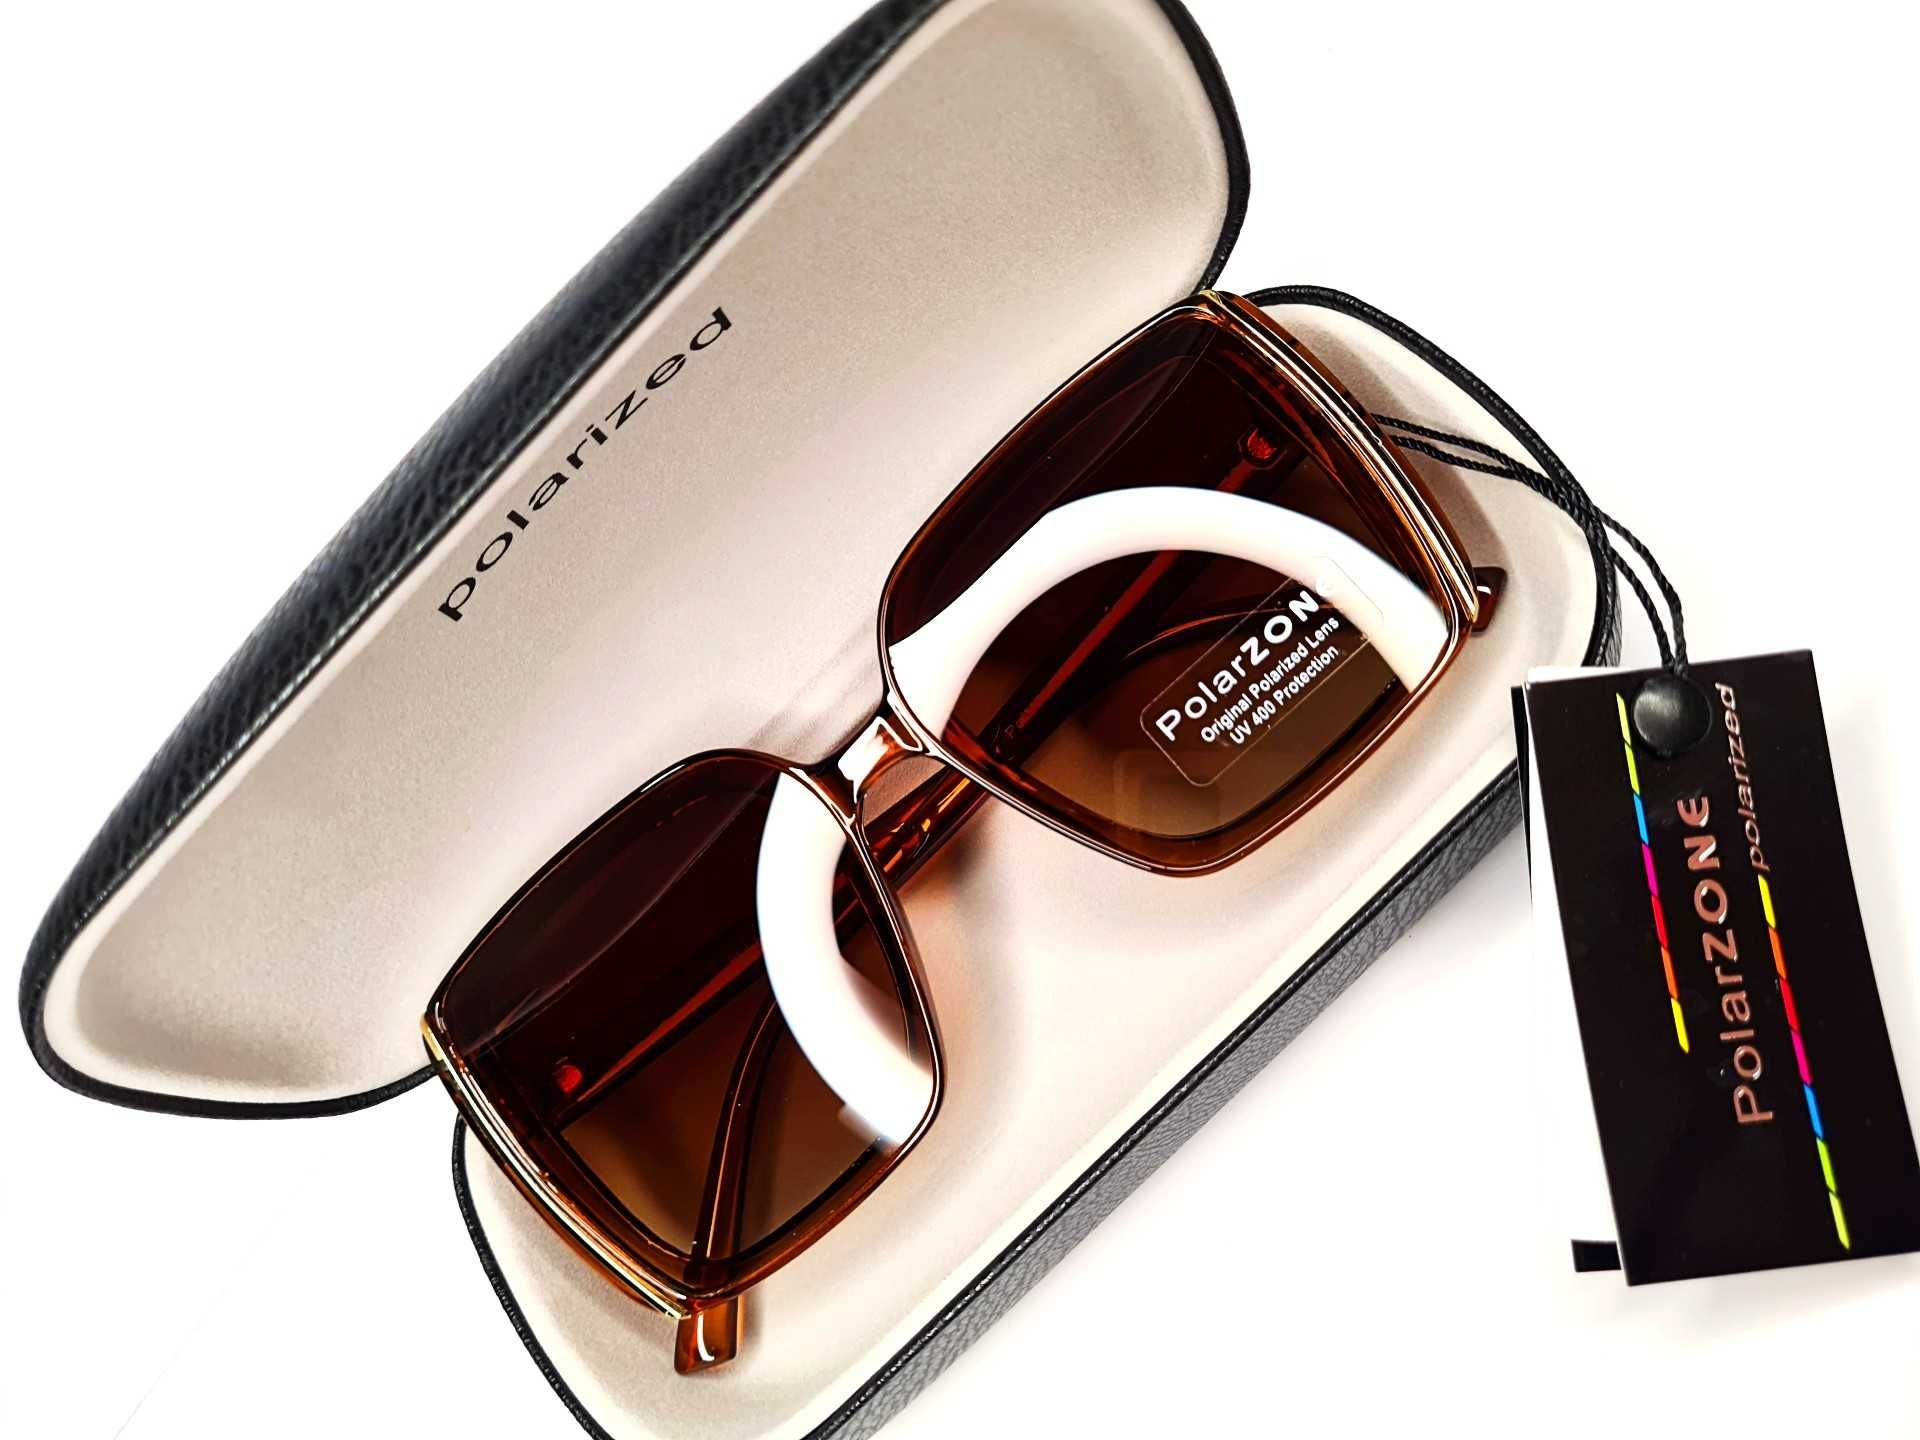 Okulary damskie przeciwsłoneczne PolarZone nowe filtr UV brązowe